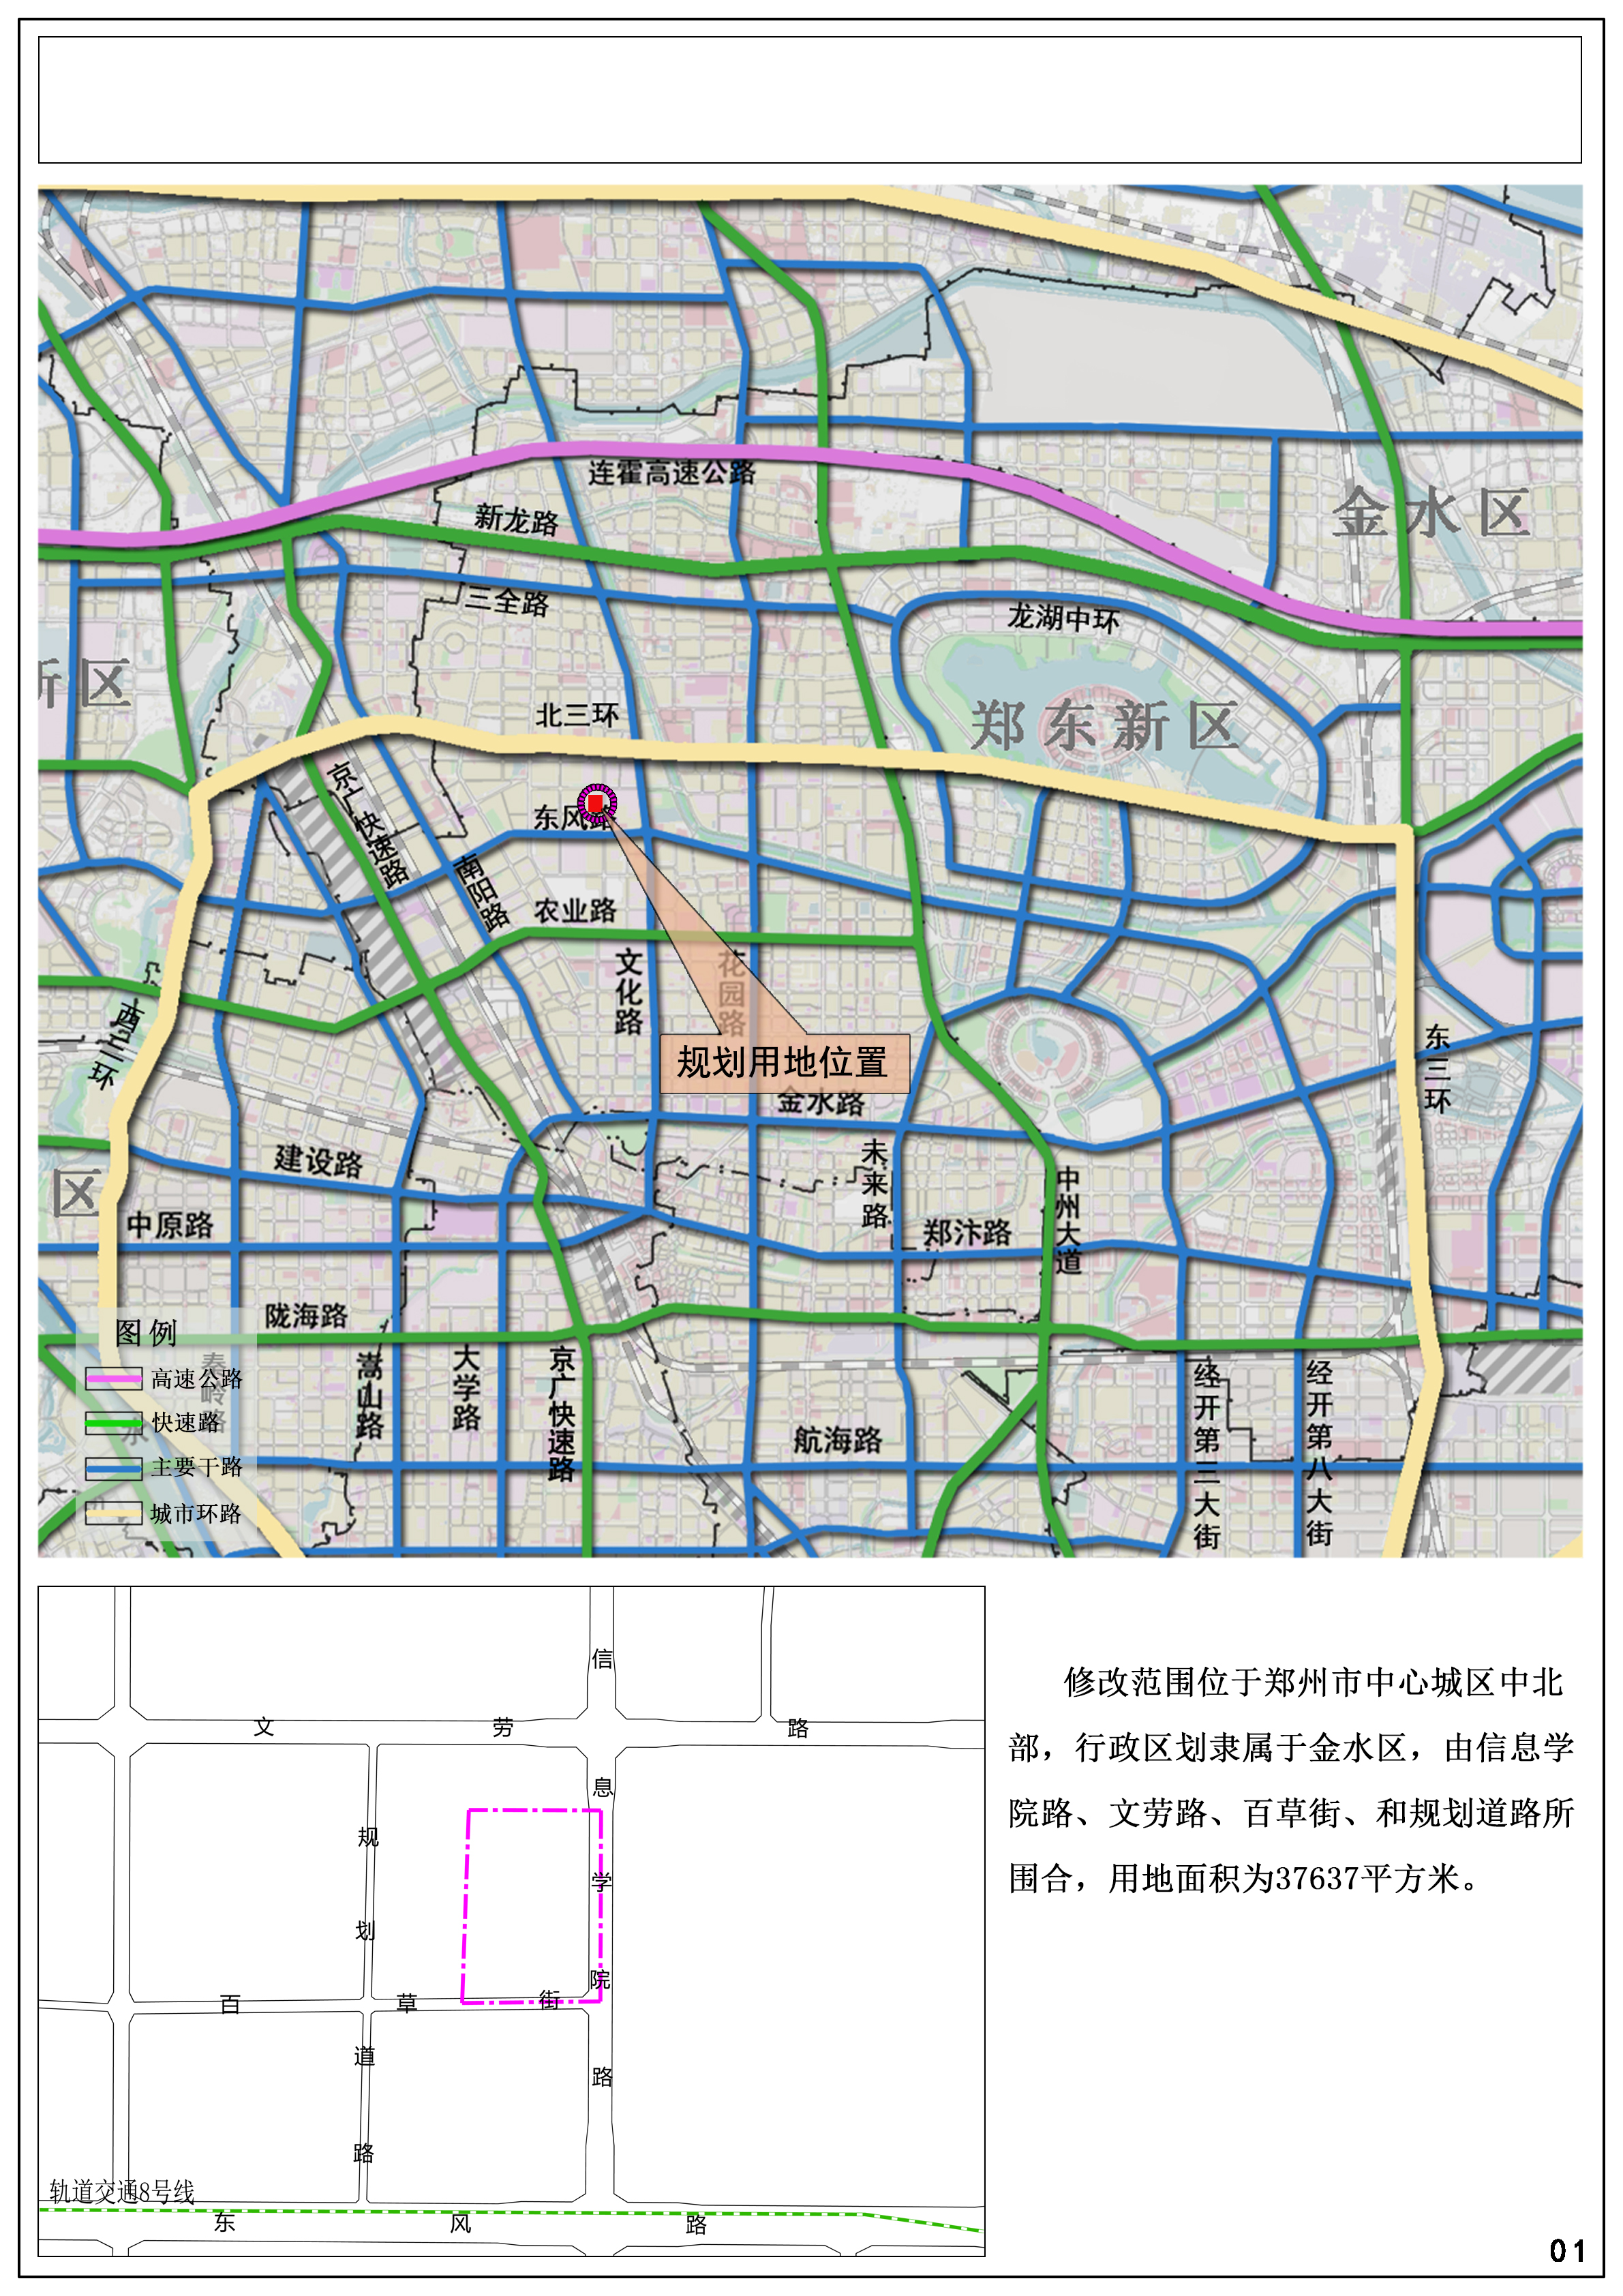 《郑州市金水区小铺村城中村改造控制性详细规划》 A-04地块修改必要性论证